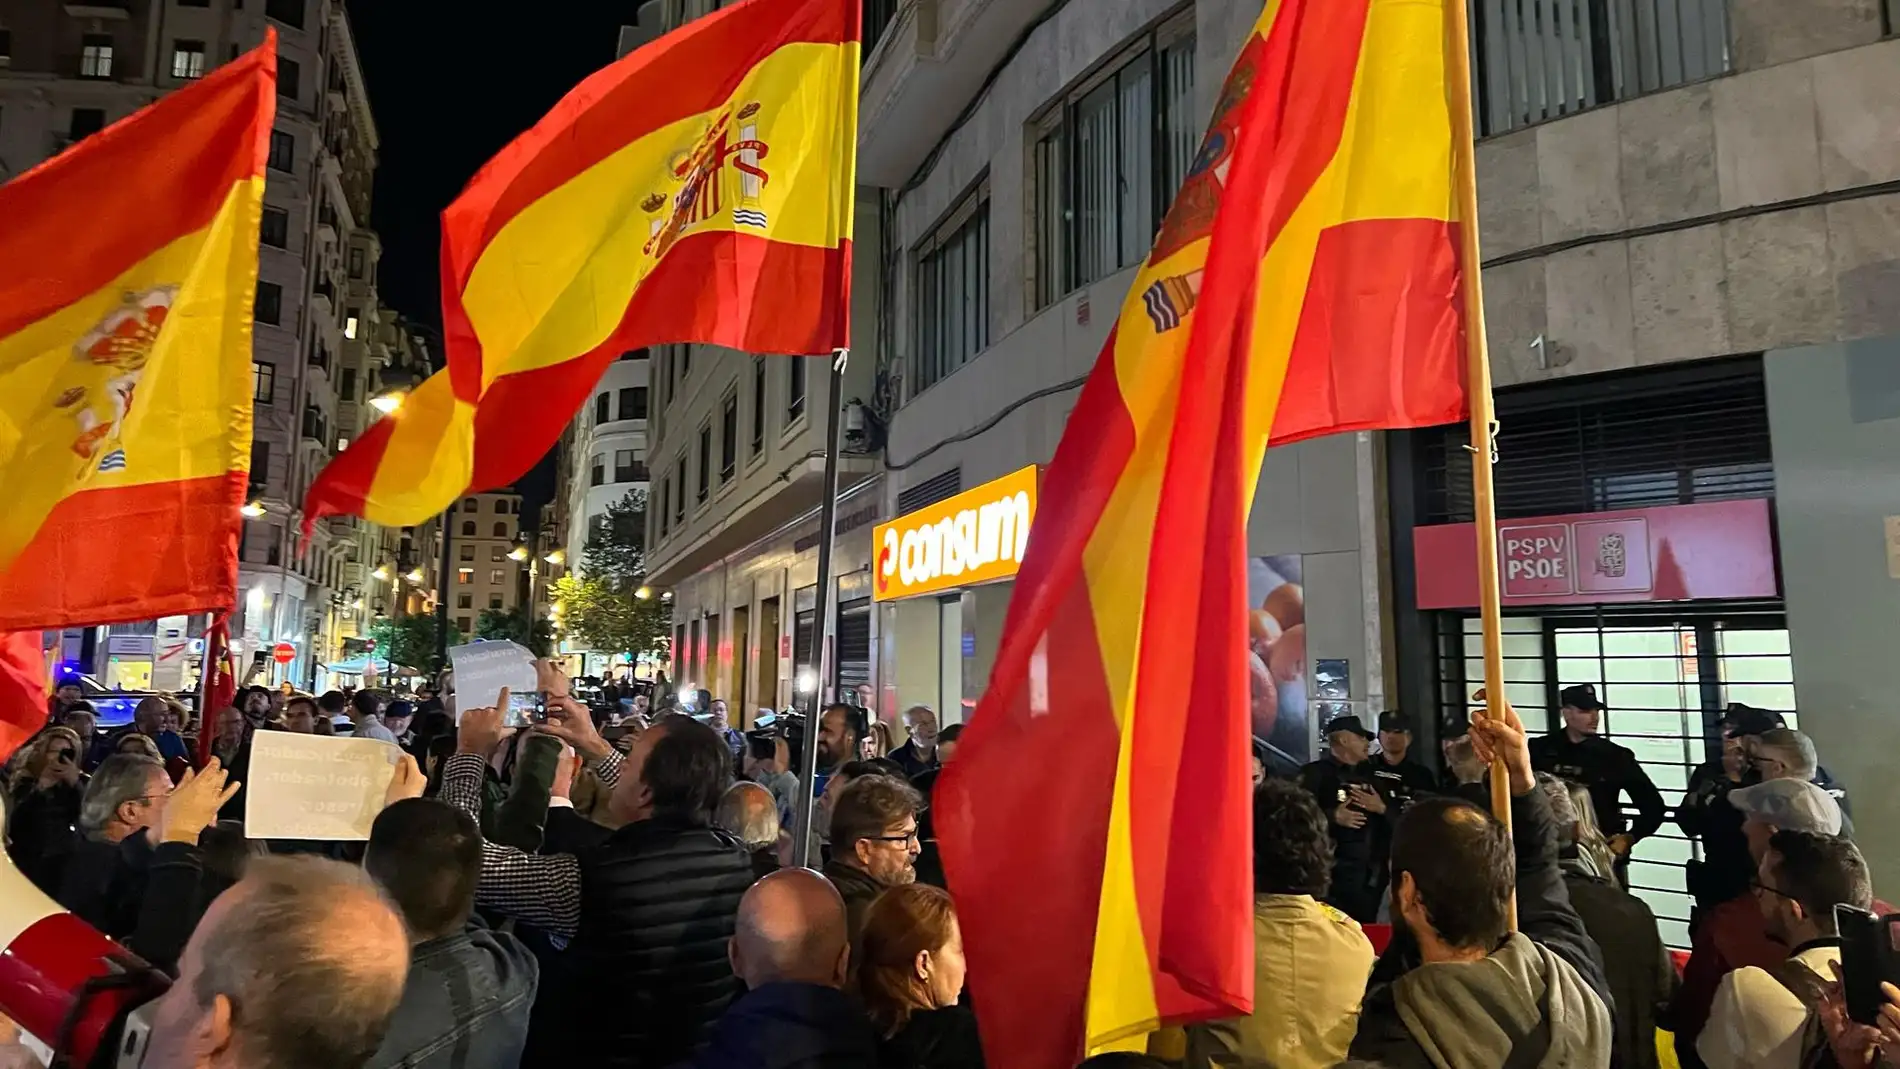 El PSPV alerta de los "discursos de odio" y Vox apoya las manifestaciones ante las sedes socialistas 